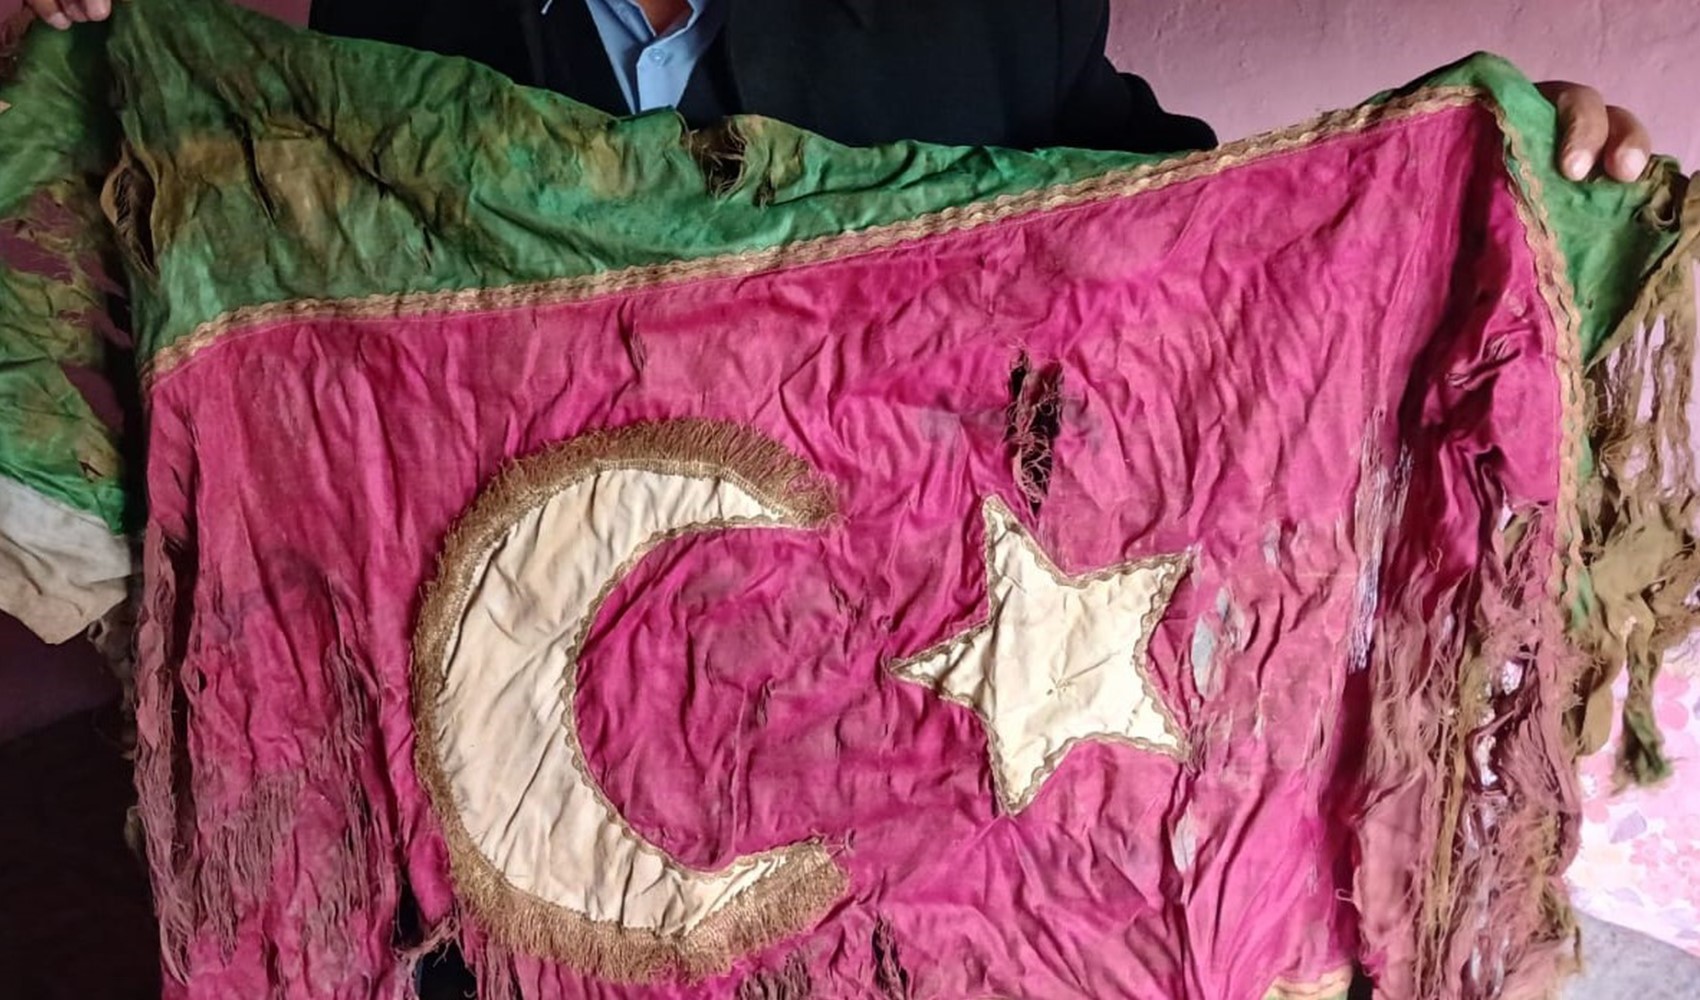 Manisa’da Kurtuluş Savaşı’ndan kalma Türk Bayrağı ortaya çıktı